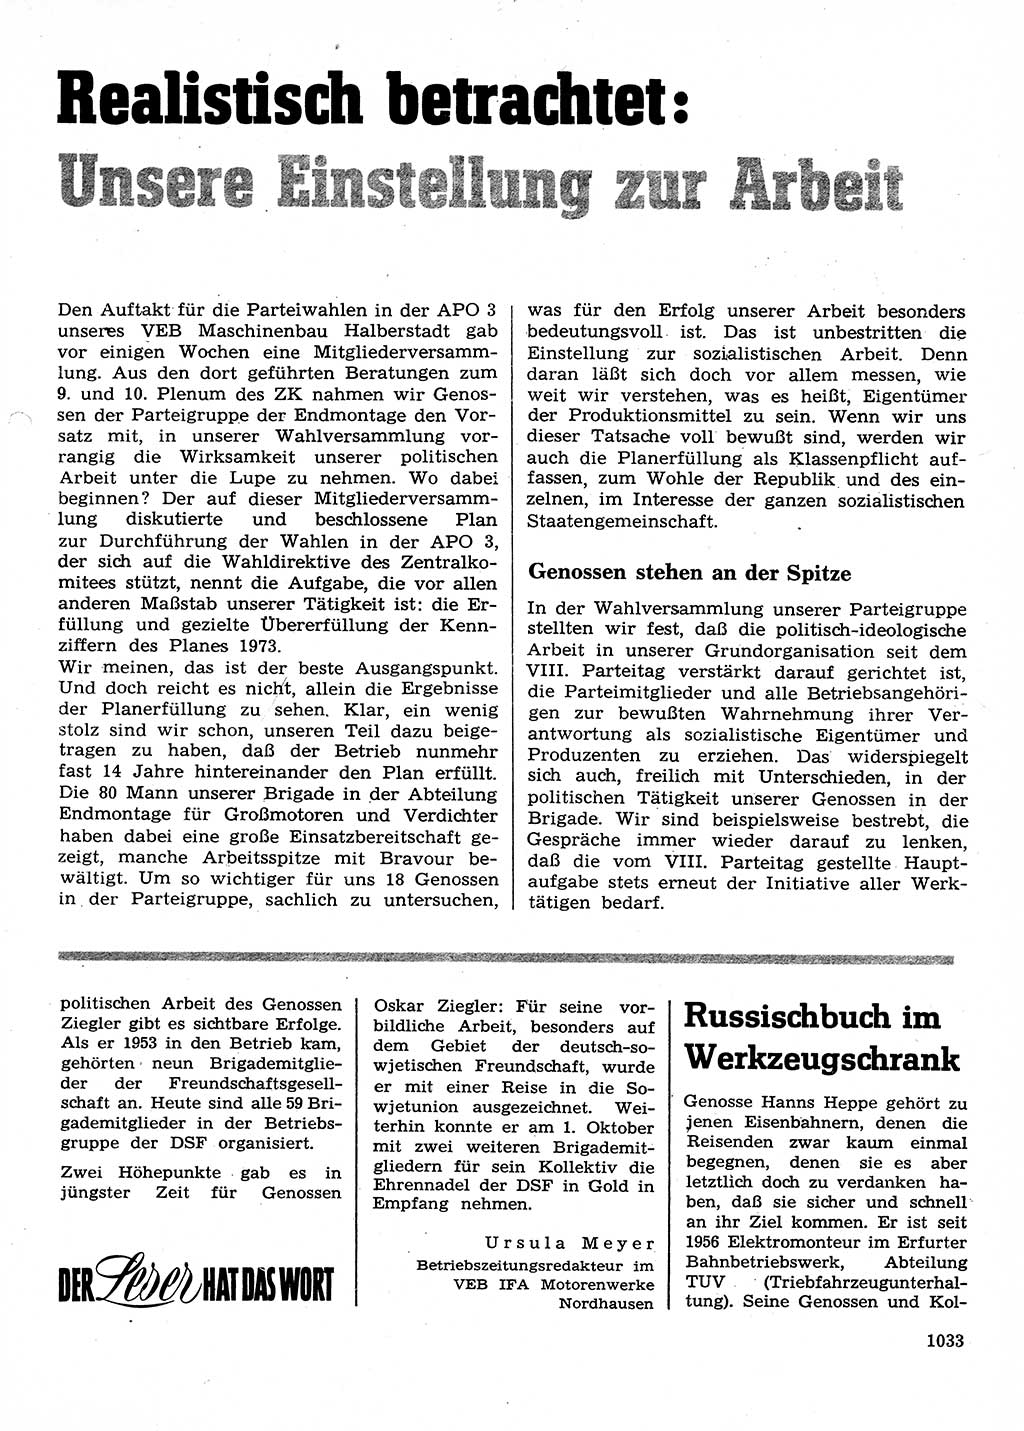 Neuer Weg (NW), Organ des Zentralkomitees (ZK) der SED (Sozialistische Einheitspartei Deutschlands) für Fragen des Parteilebens, 28. Jahrgang [Deutsche Demokratische Republik (DDR)] 1973, Seite 1033 (NW ZK SED DDR 1973, S. 1033)